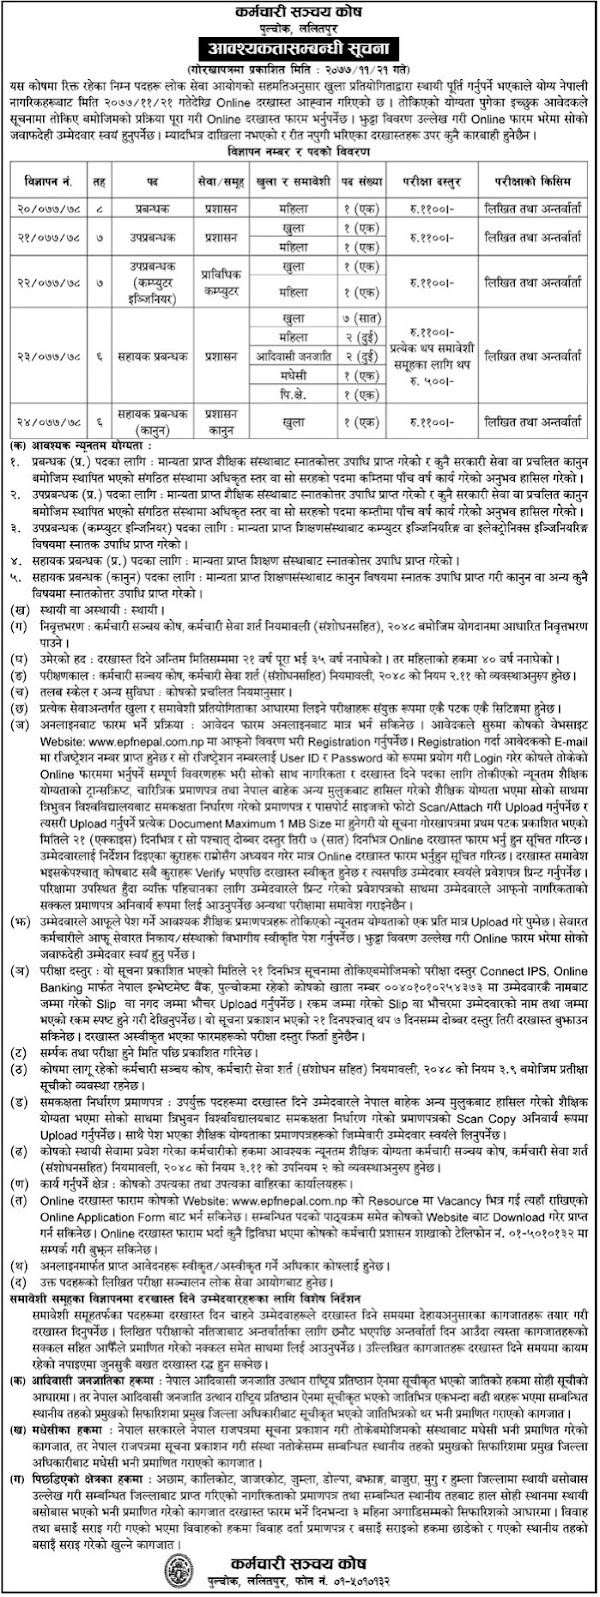 Vacancy announcement from Employees Provident Fund (Karmachari Sanachaya Kosh)